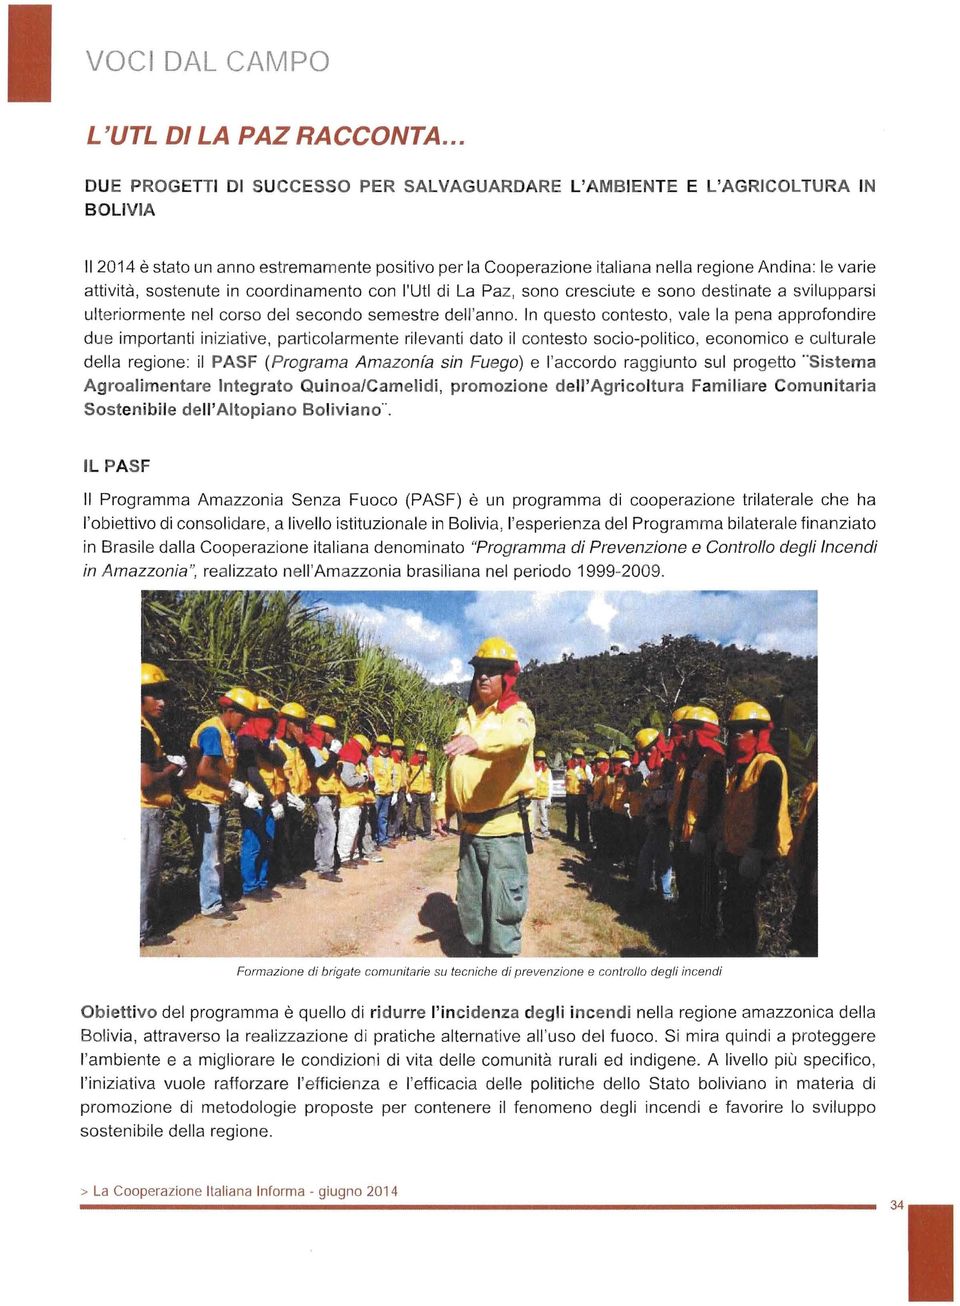 attivita, sostenute in coordinamento con l'utl di La Paz, sono cresciute e sono destinate a svilupparsi ulteriormente nel corso del secondo semestre dell'anno.